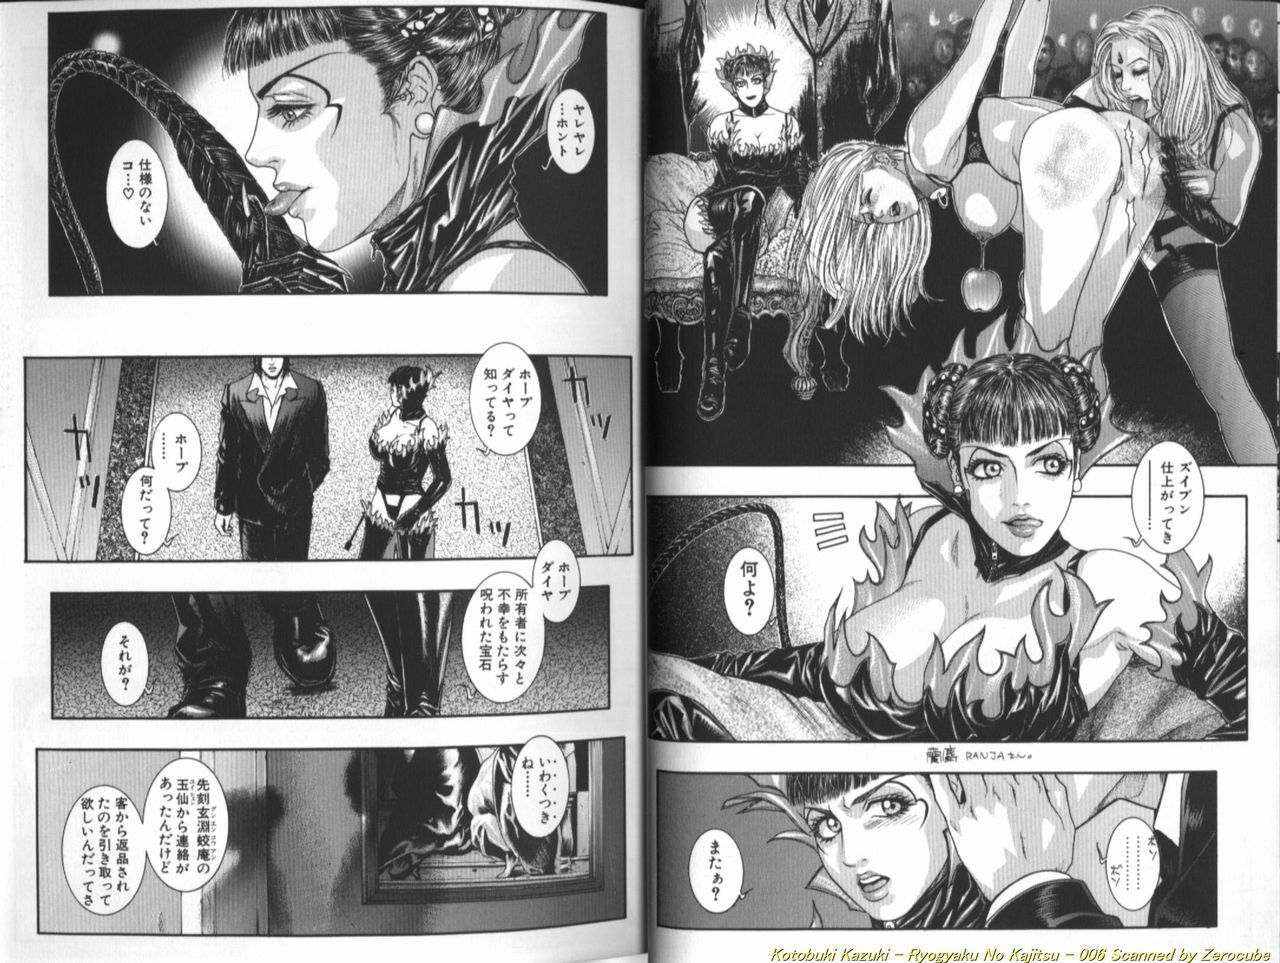 [Kotobuki Kazuki] Ryogyaku no Kajitsu 1 page 7 full